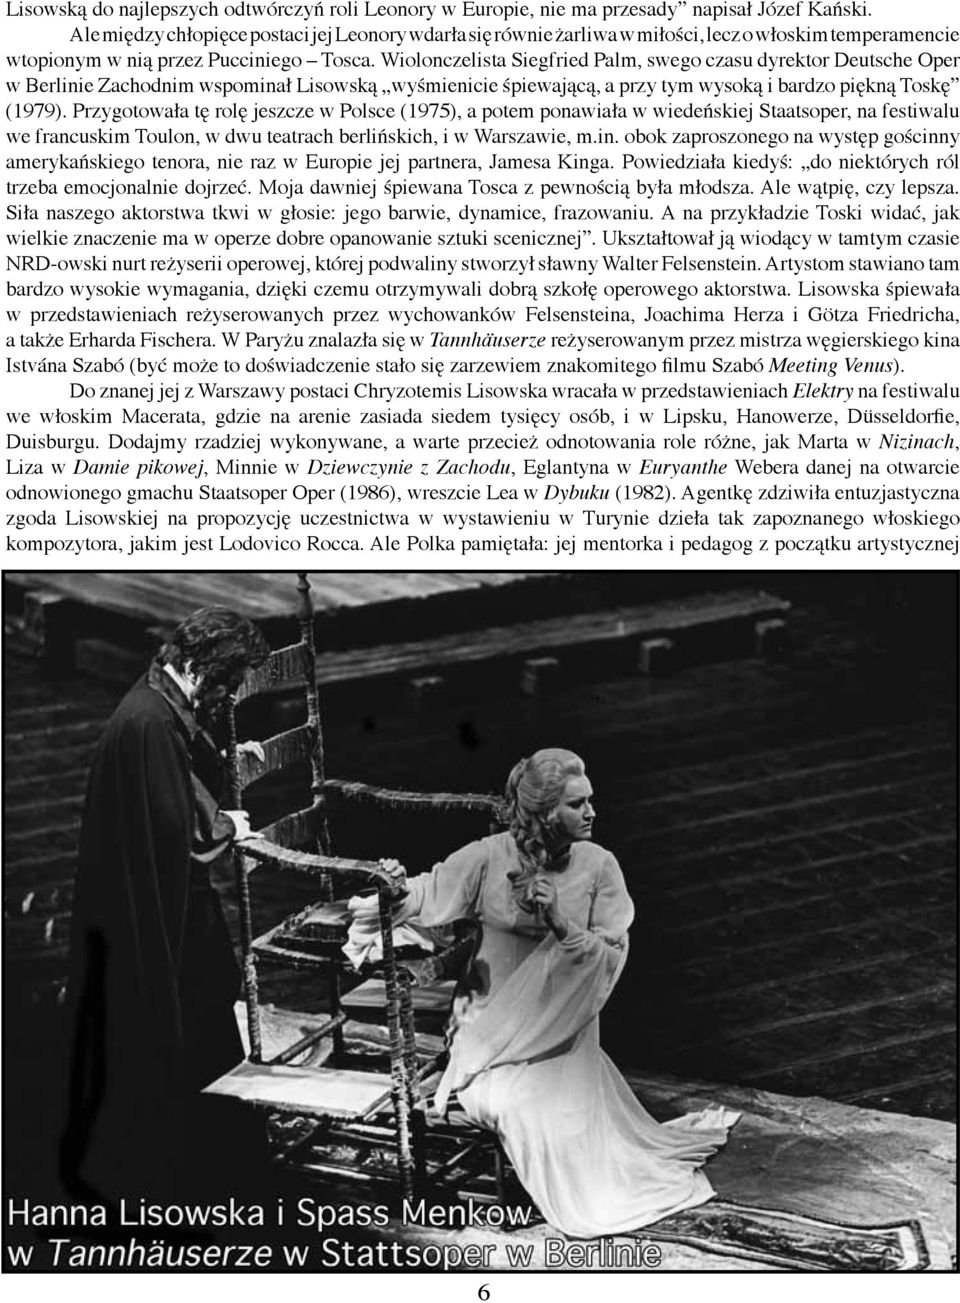 Wiolonczelista Siegfried Palm, swego czasu dyrektor Deutsche Oper w Berlinie Zachodnim wspominał Lisowską wyśmienicie śpiewającą, a przy tym wysoką i bardzo piękną Toskę (1979).